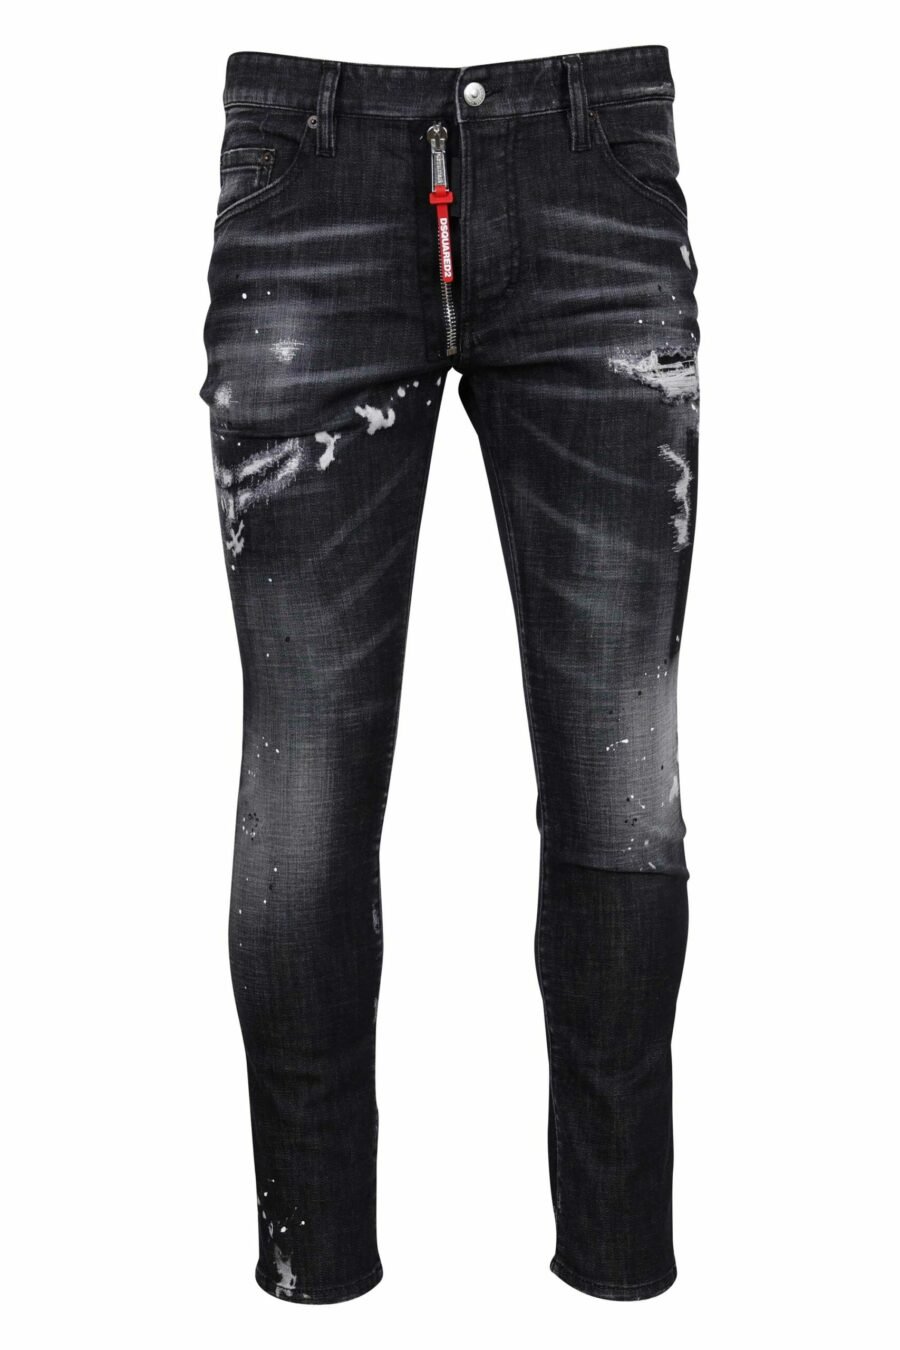 Schwarze "Skater-Jeans"-Hose mit Rissen und halb zerschlissen - 8054148300746 skaliert